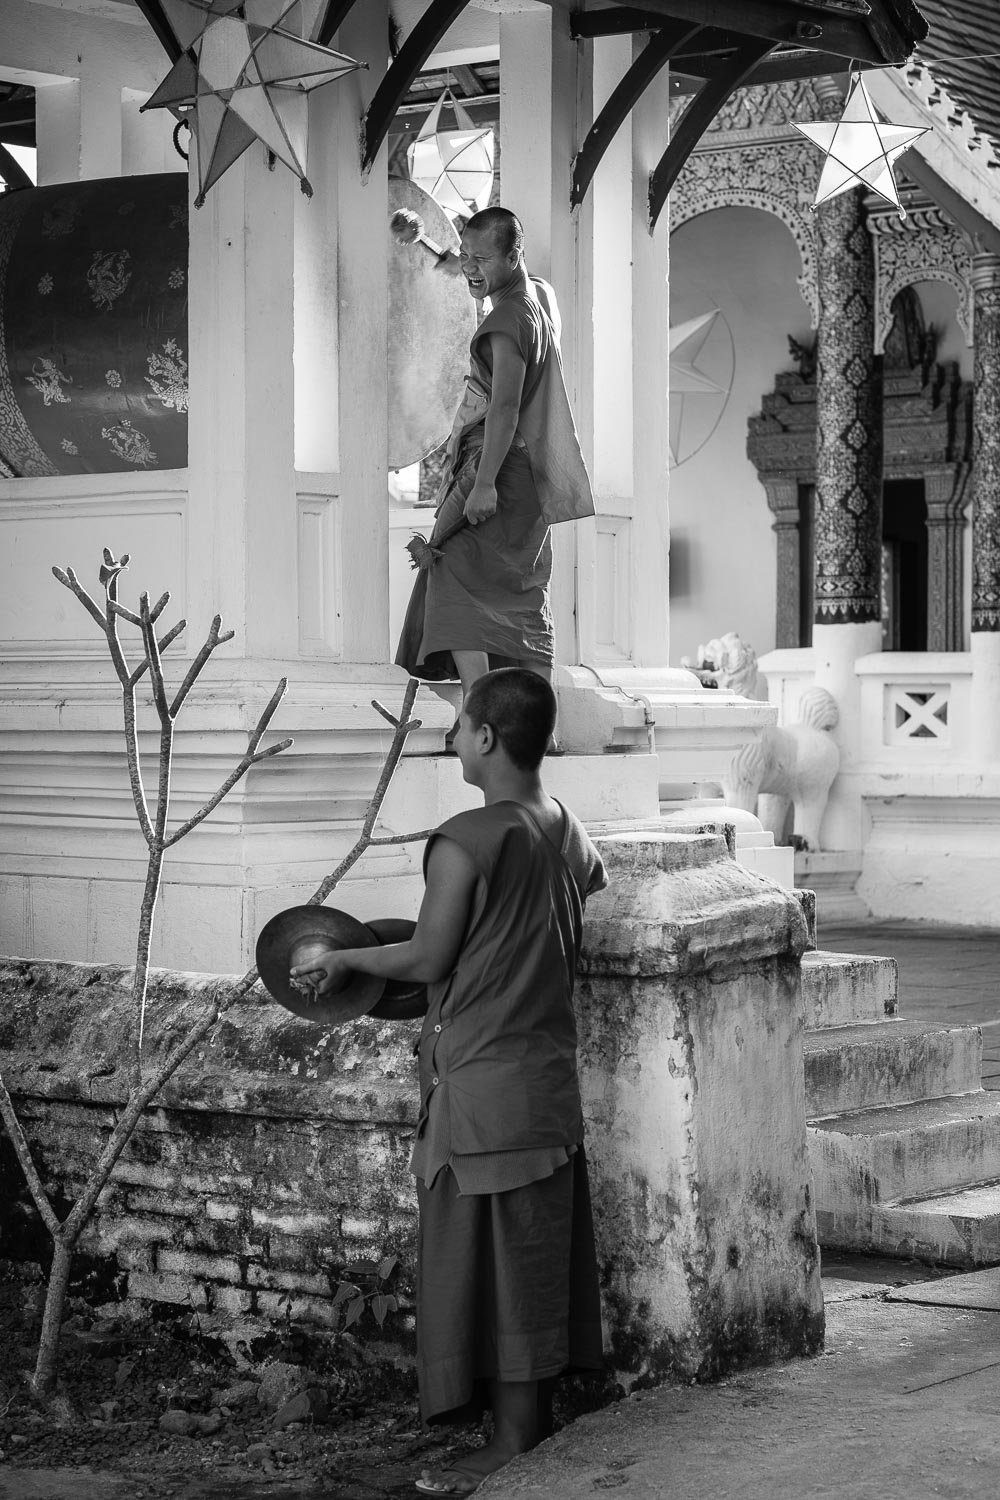 luang prabang monks drumming